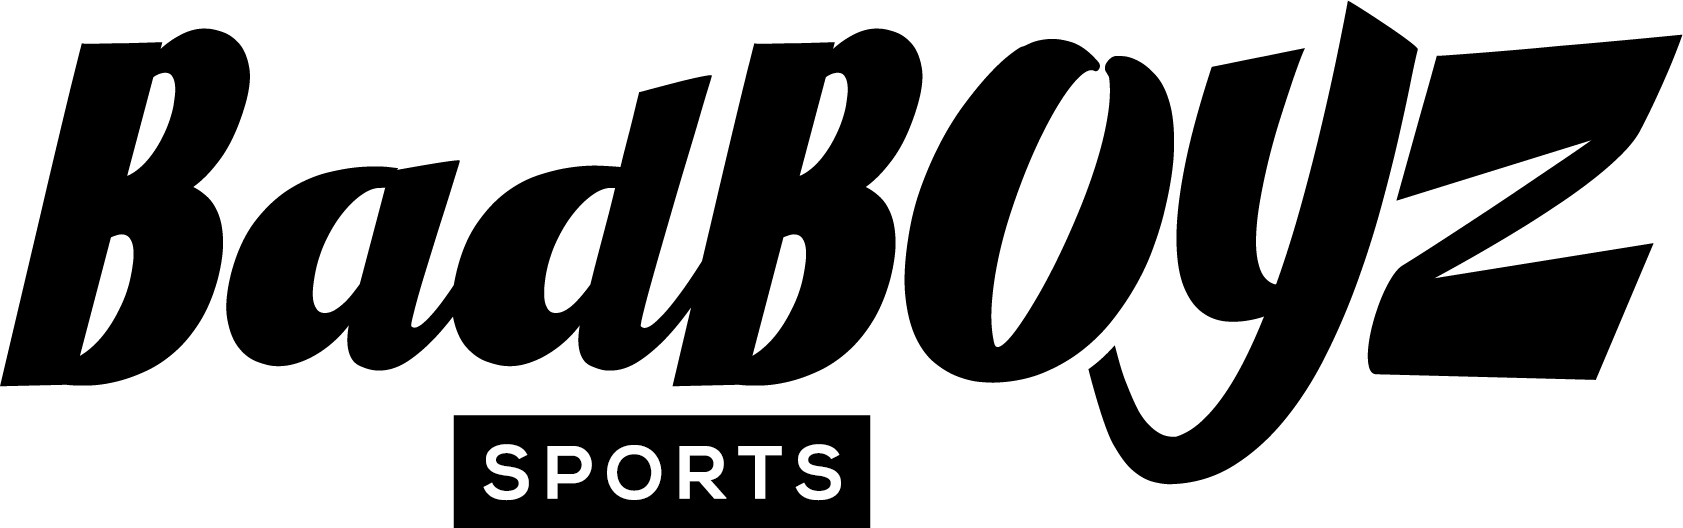 badboyz-logo